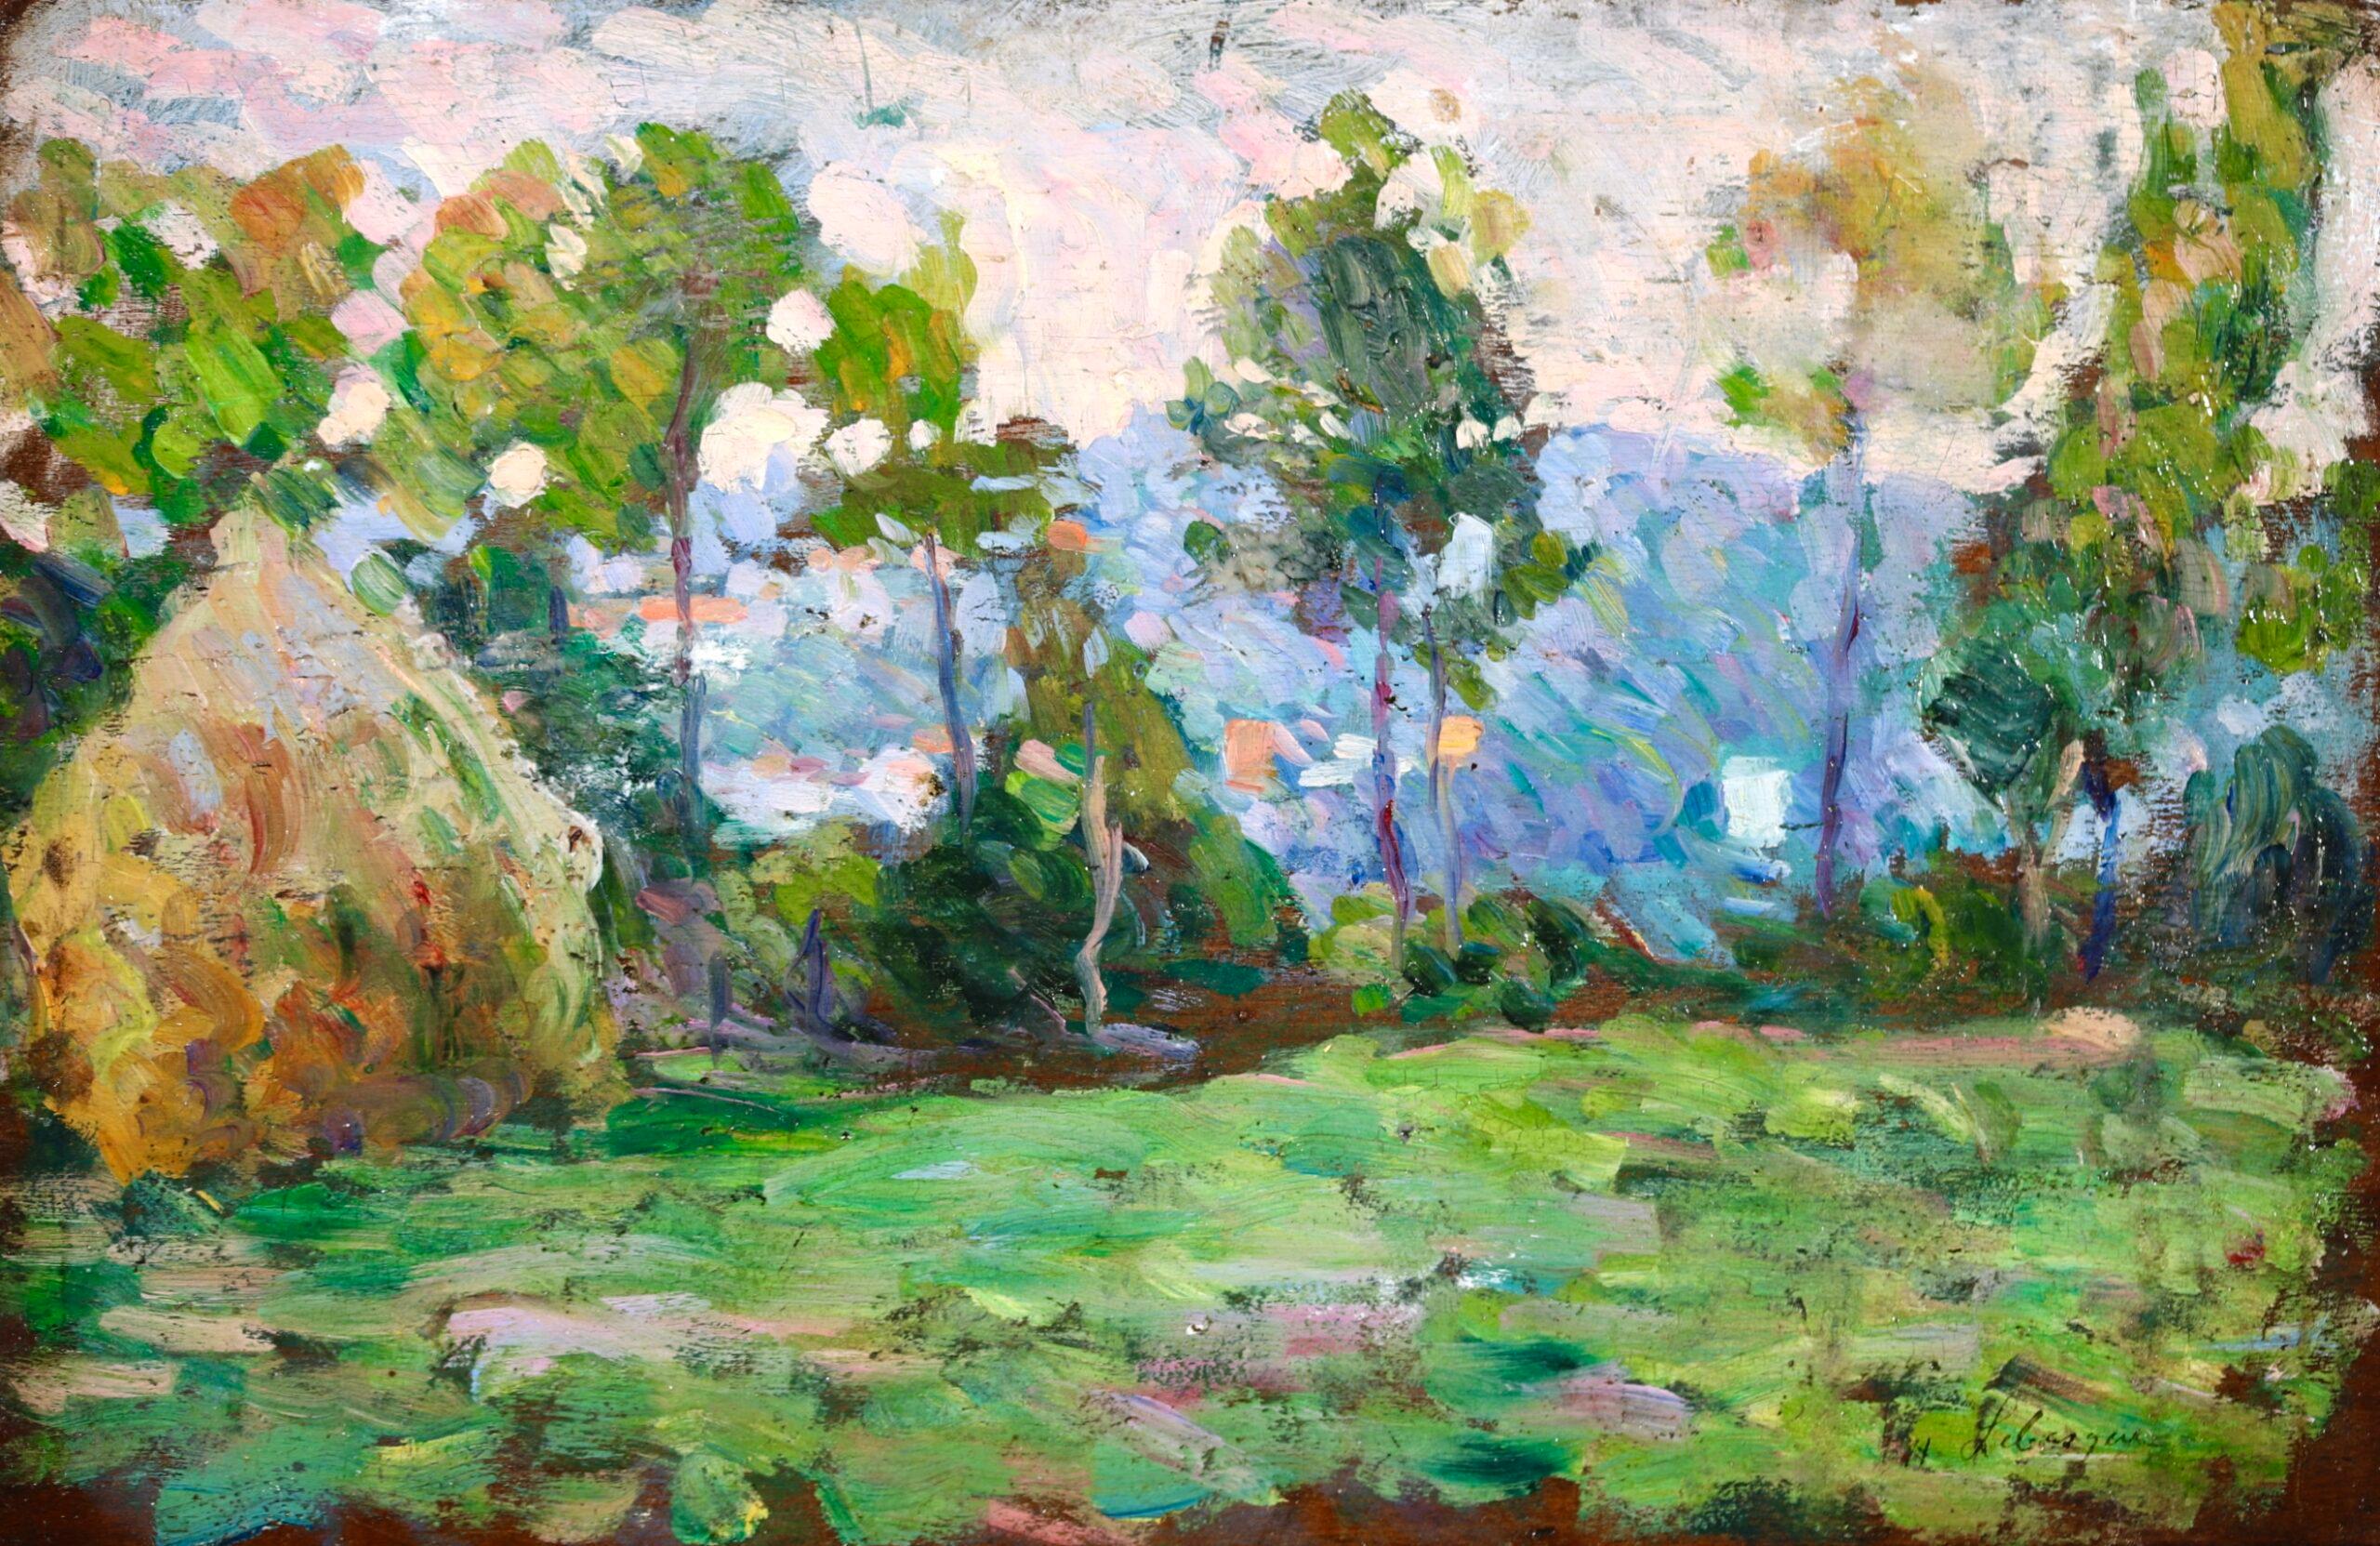 Signierte Öl auf Panel Landschaft circa 1900 von Französisch post impressionistischen Maler Henri Lebasque. Das Werk zeigt ein von Bäumen gesäumtes Feld mit einem Heuhaufen auf der linken Seite. Von hier aus hat man einen Blick auf die Berge. Bei